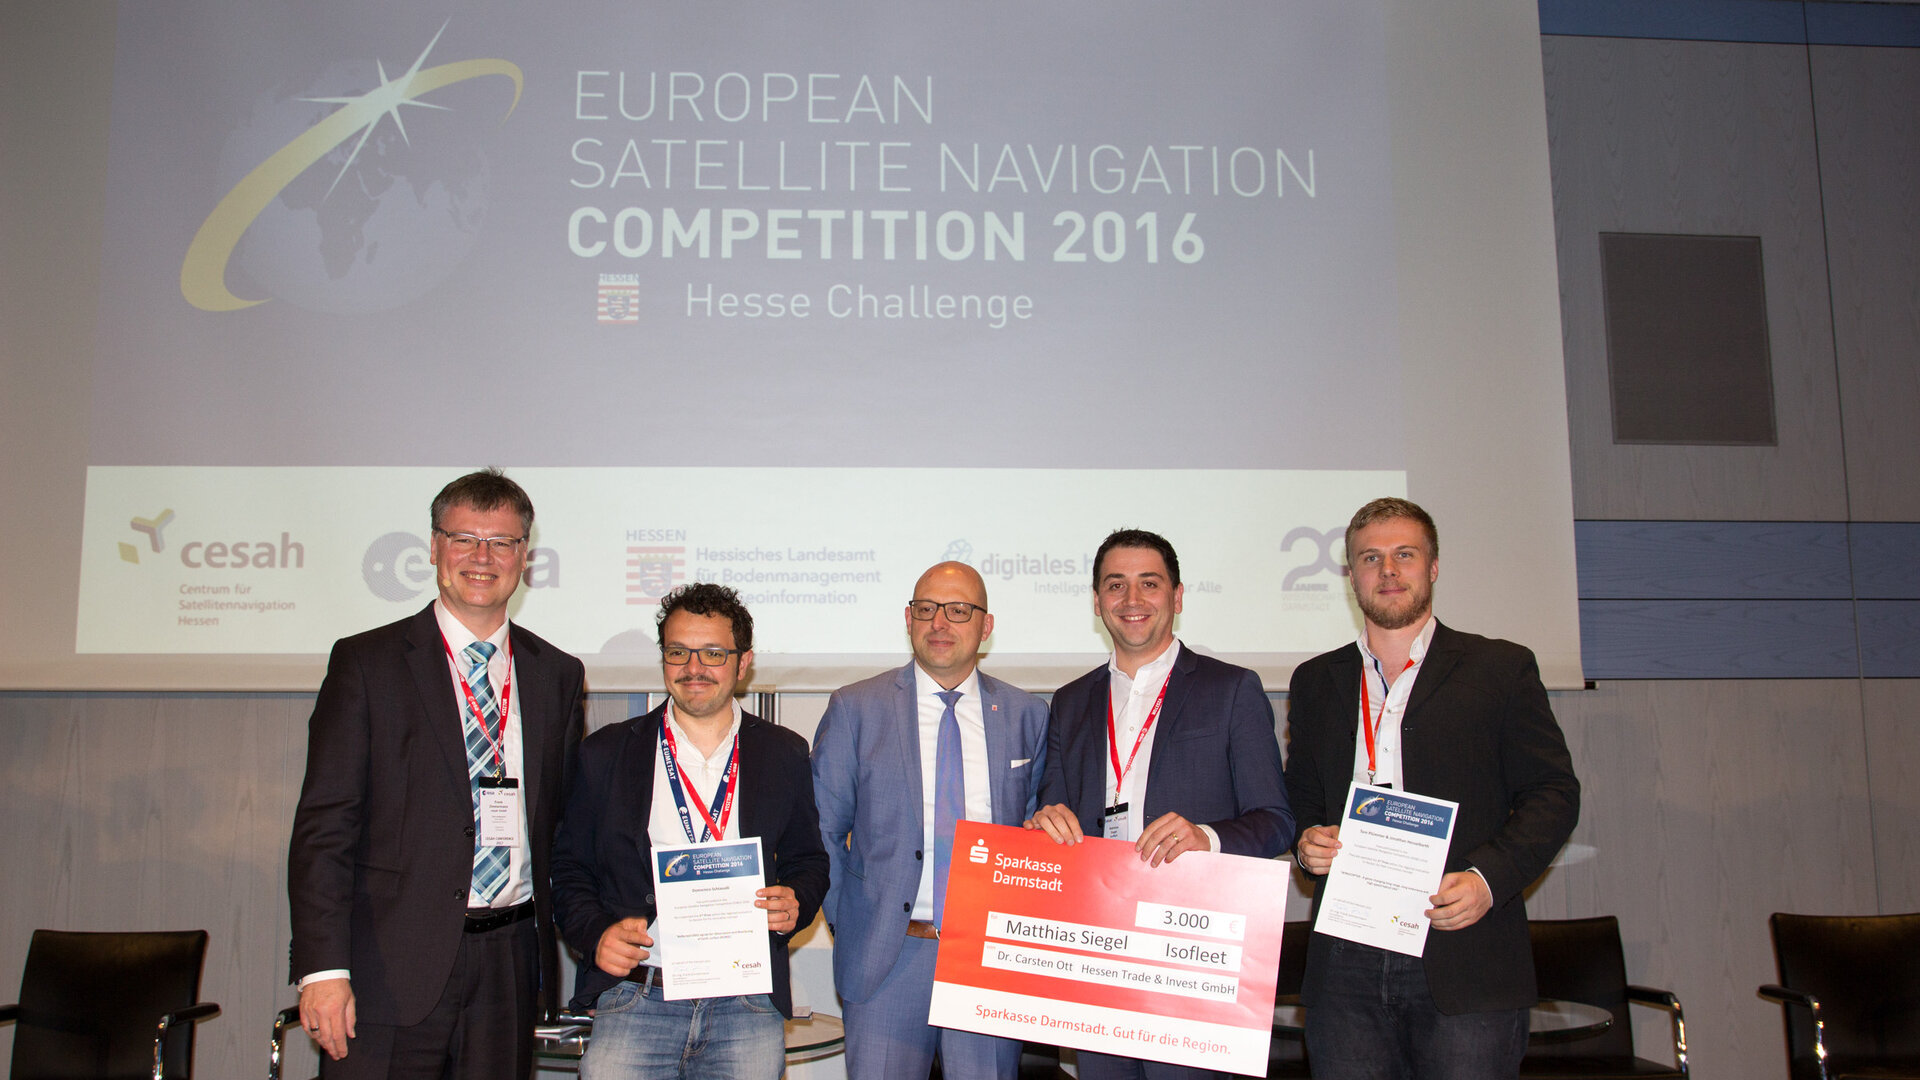 Gewinner des Ideenwettbewerbs 2016 in Hessen:  Matthias Siegel, Isofleet und das Team